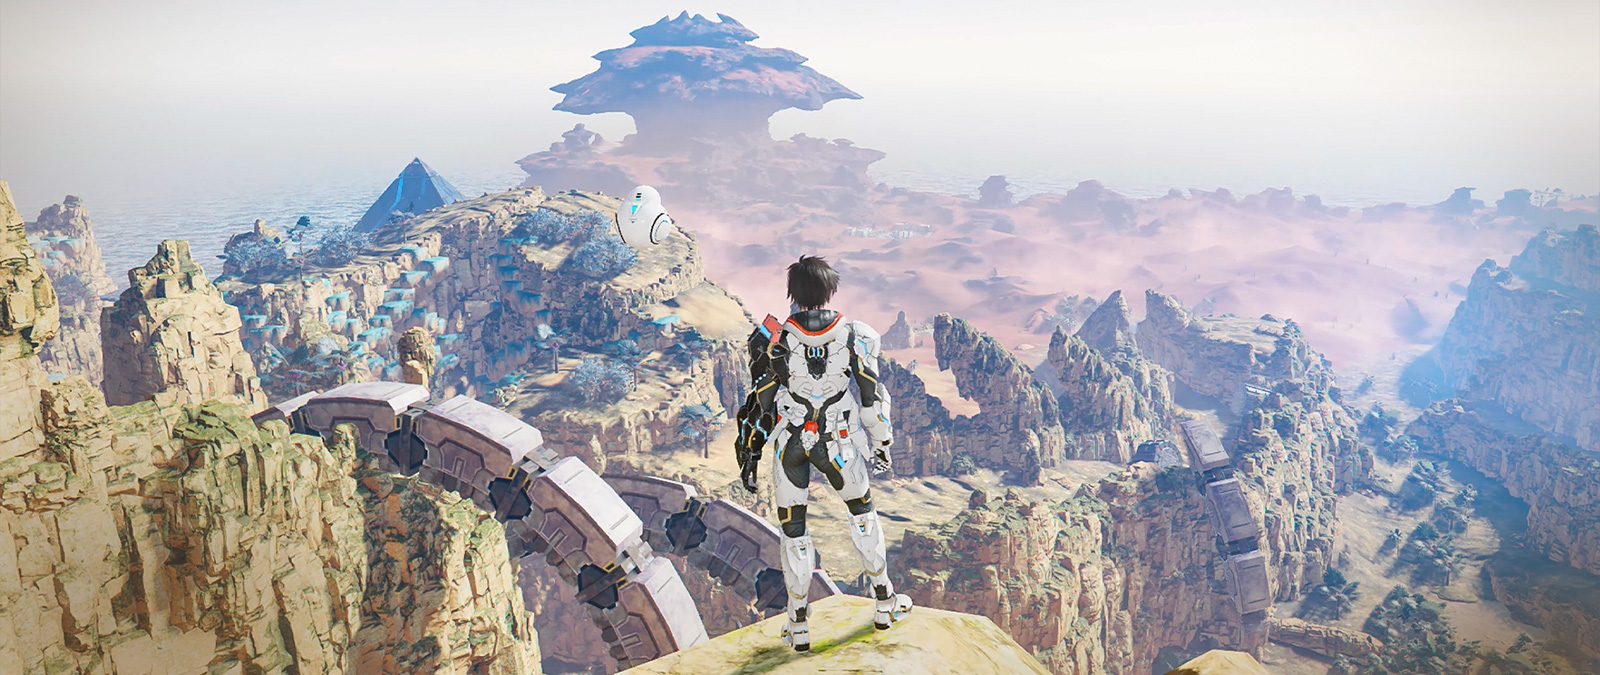 Персонаж в экзоскелете стоит на скале и смотрит на долину.